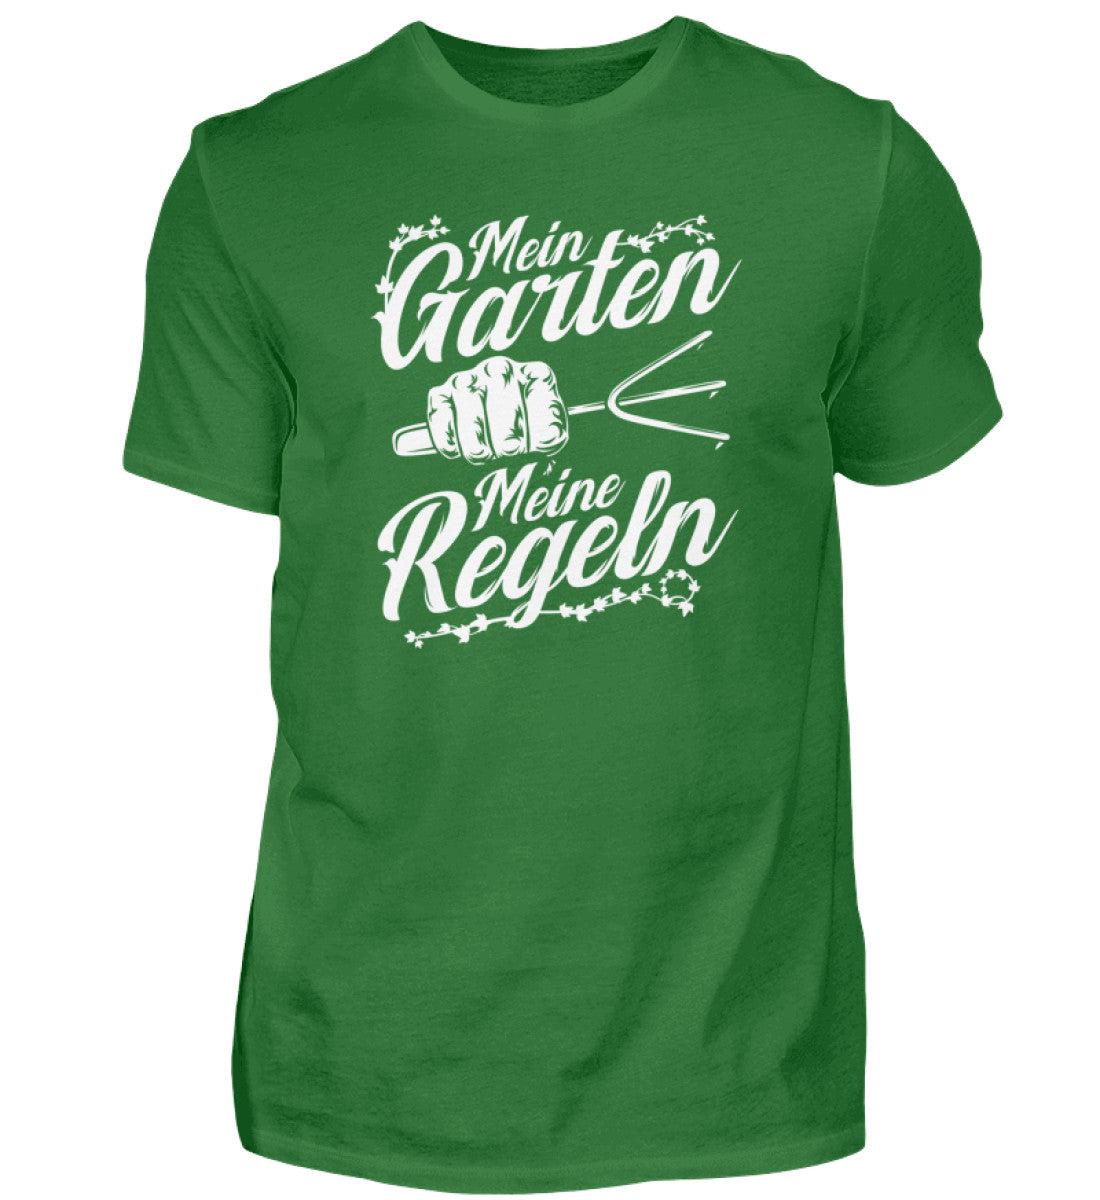 Mein Garten meine Regeln · Herren T-Shirt-Herren Basic T-Shirt-Kelly Green-S-Agrarstarz